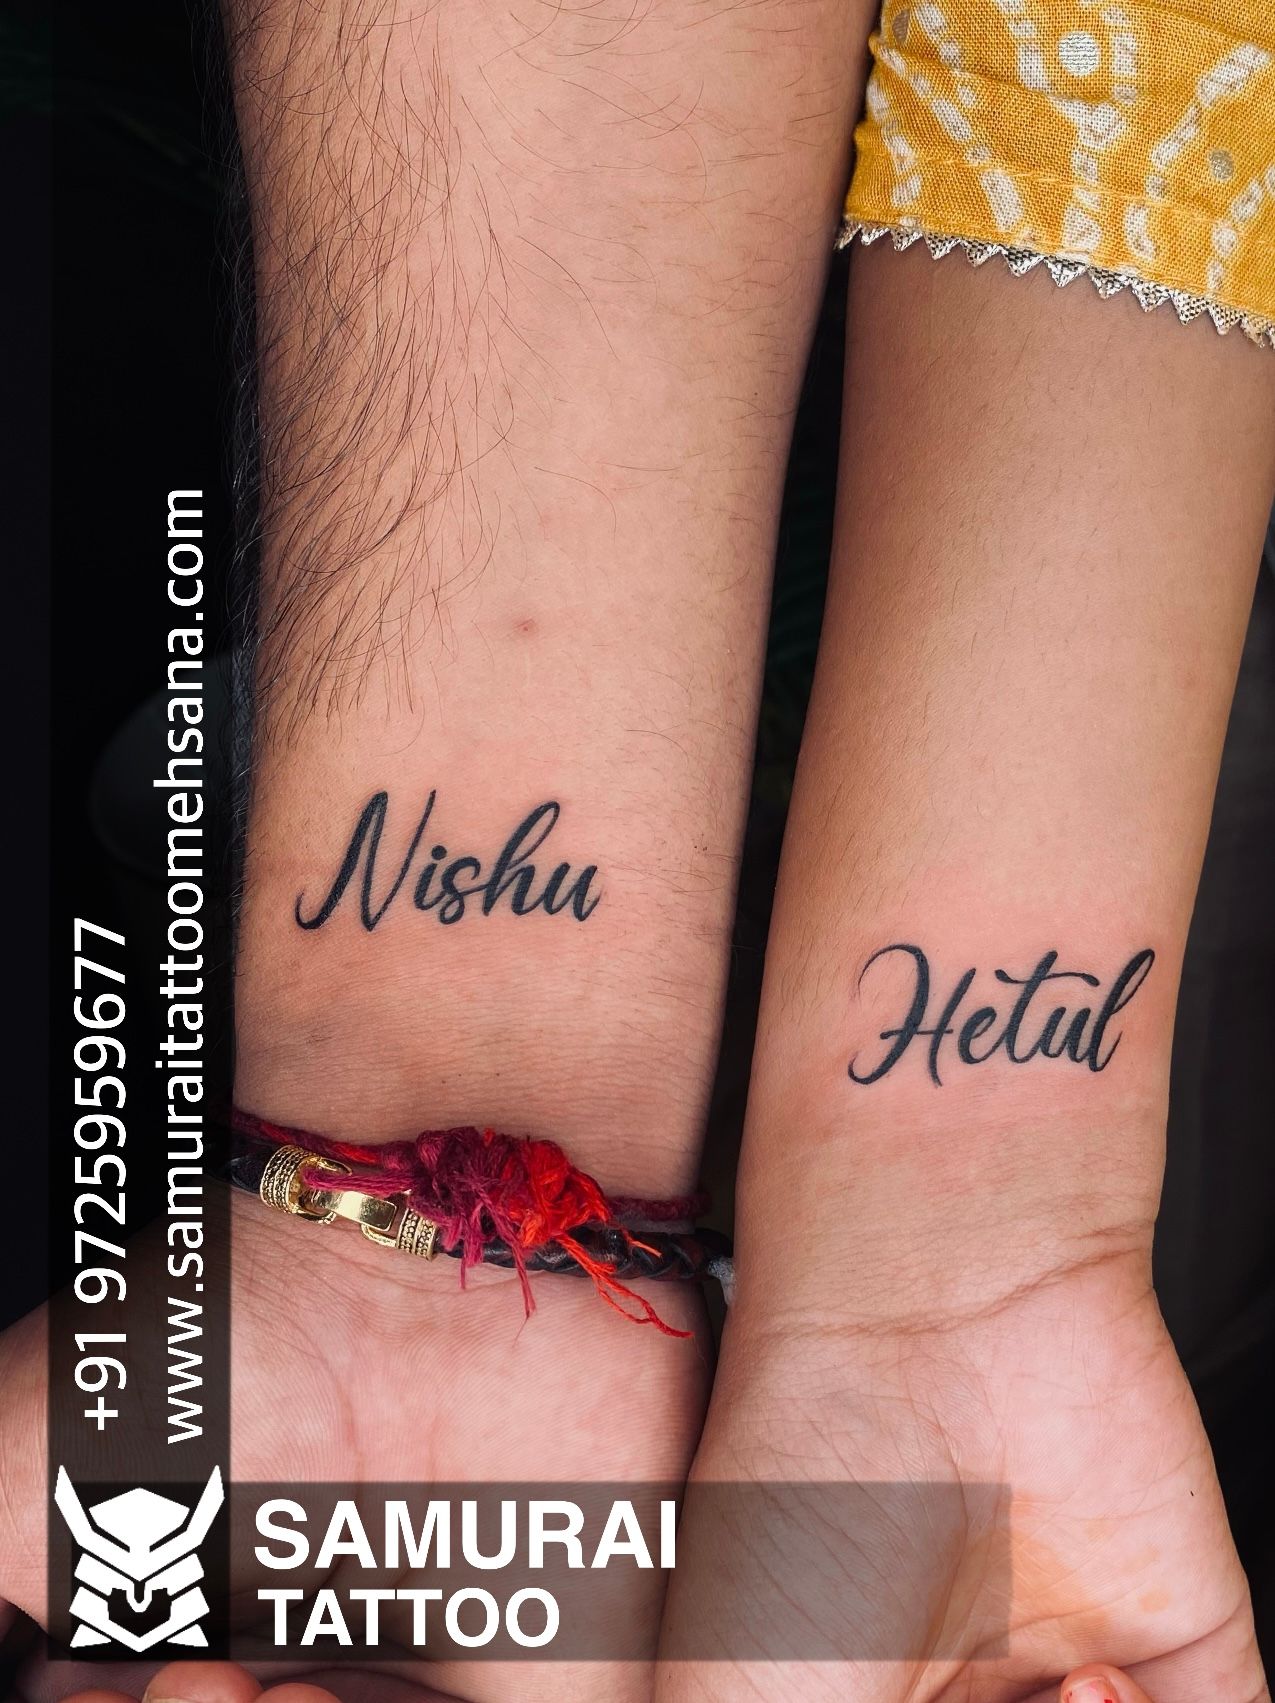 Nisha Name tattoo done by Ashu  Black Stain tattoo studio  Facebook